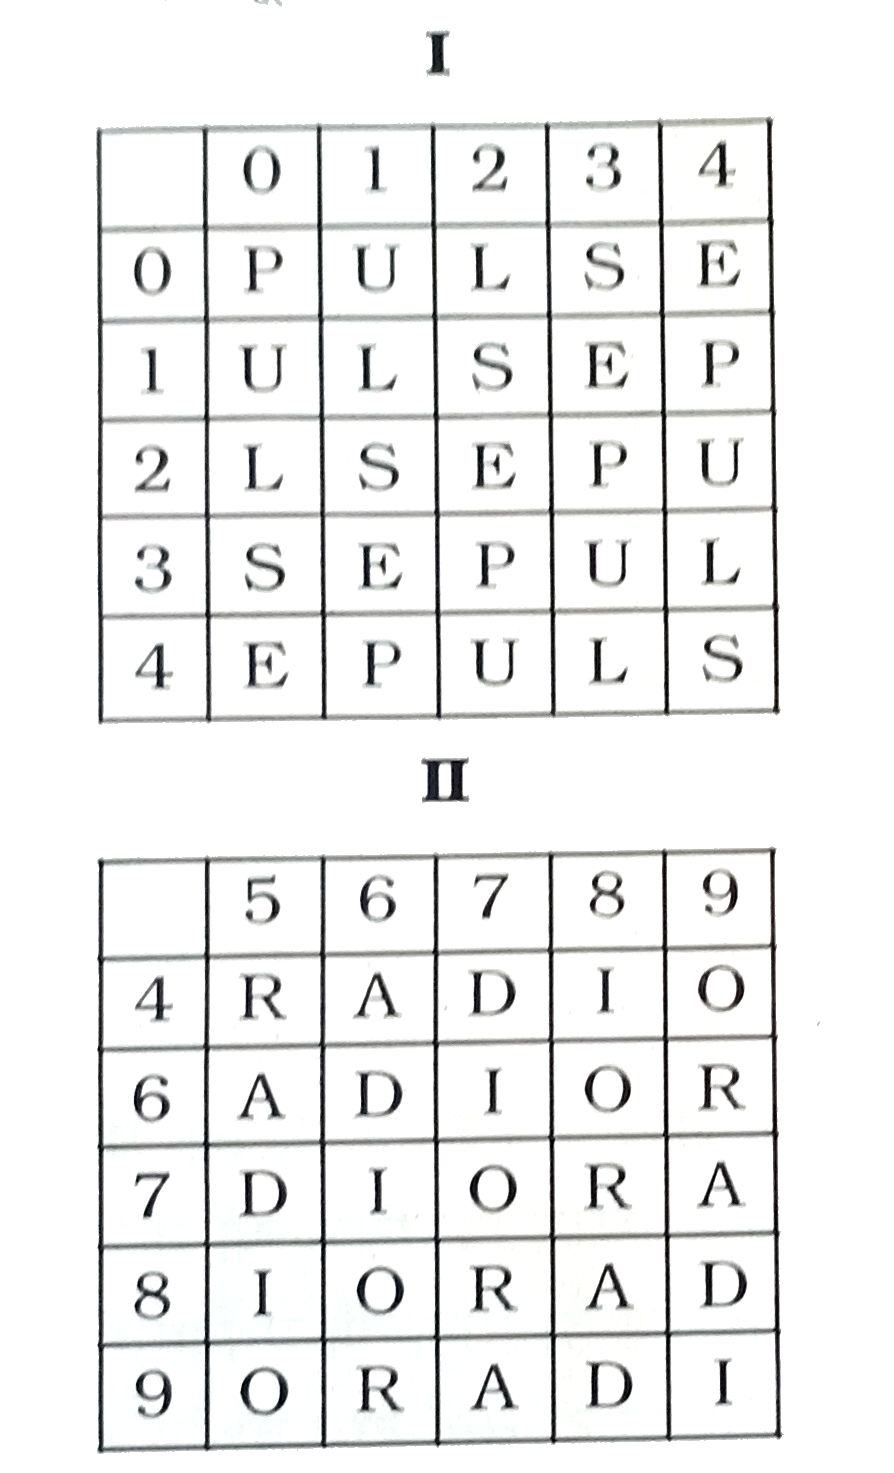 एक शब्द केवल एक संख्या-समूह द्वारा दर्शाया गया है, जैसा कि विकल्पों में से किसी एक में दिया गया है । विकल्पों में दिए गए संख्या-समूह अक्षरों के दो वर्गो द्वारा दर्शाए गए है, जैसा कि नीचे दिए गए दो आव्यूहों में है। आव्यूह -I के स्तम्भ और पंक्ति की संख्या 0 से 4 दी गई है और आव्यूह-II की 5 से 9 । इन आव्यूहों से एक अक्षर को पहले उसकी पंक्ति और बाद में स्तम्भ संख्या द्वारा दर्शाया जा सकता है । उदाहरण के लिए, P को 00,14 आदि द्वारा दर्शाया जा सकता है तथा A को 56,79, आदि द्वारा दर्शाया जा सकता है । इसी तरह से, आपको शब्द ROSE के लिए समूह पहचानना है ।